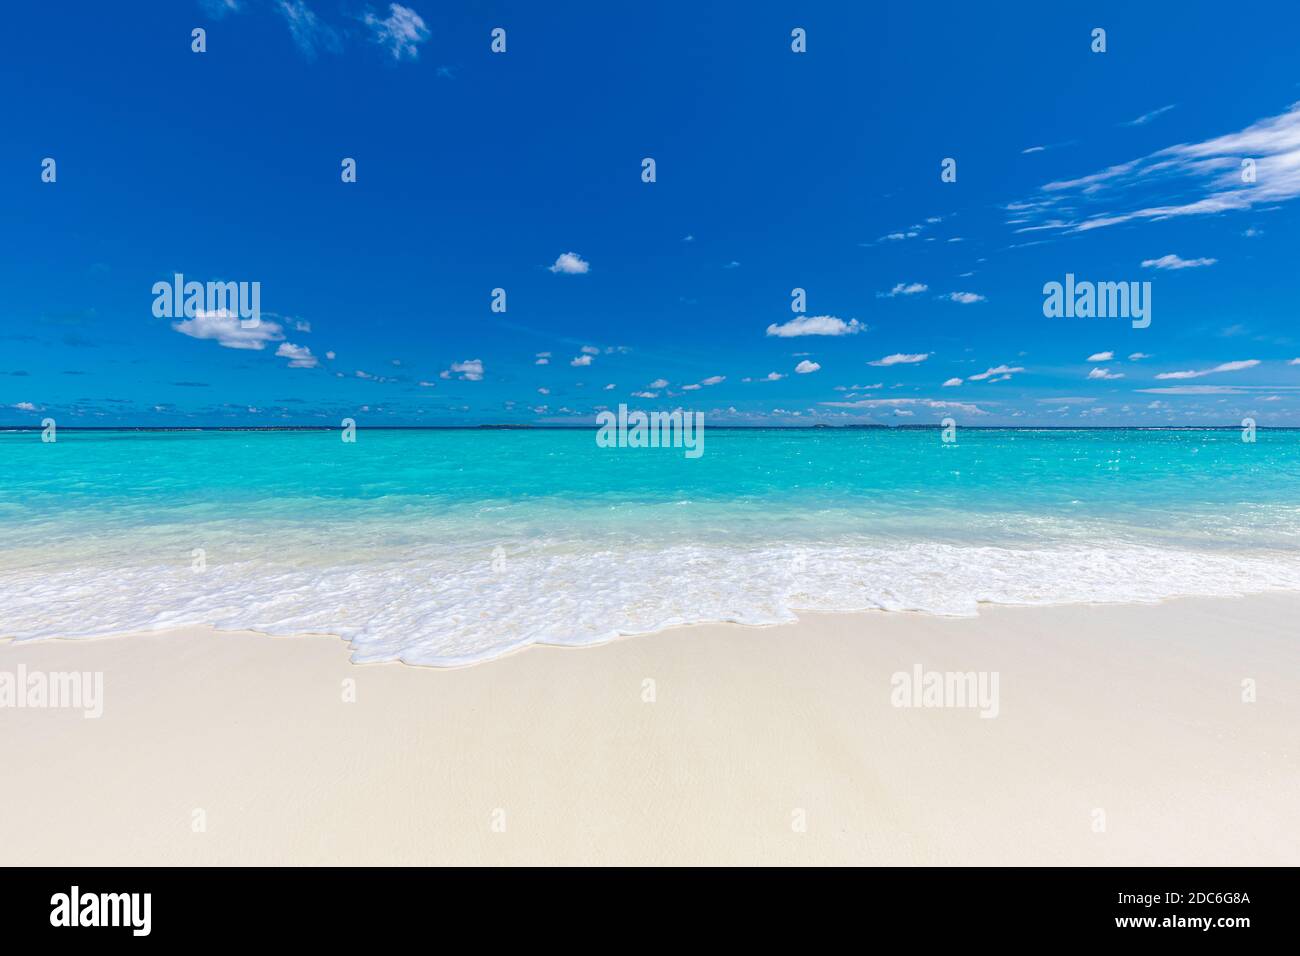 Plage tranquille. Paysage exotique de plage tropicale. Conception de vacances d'été concept, vagues, horizon de mer sur sable blanc avec ciel bleu. Banque D'Images